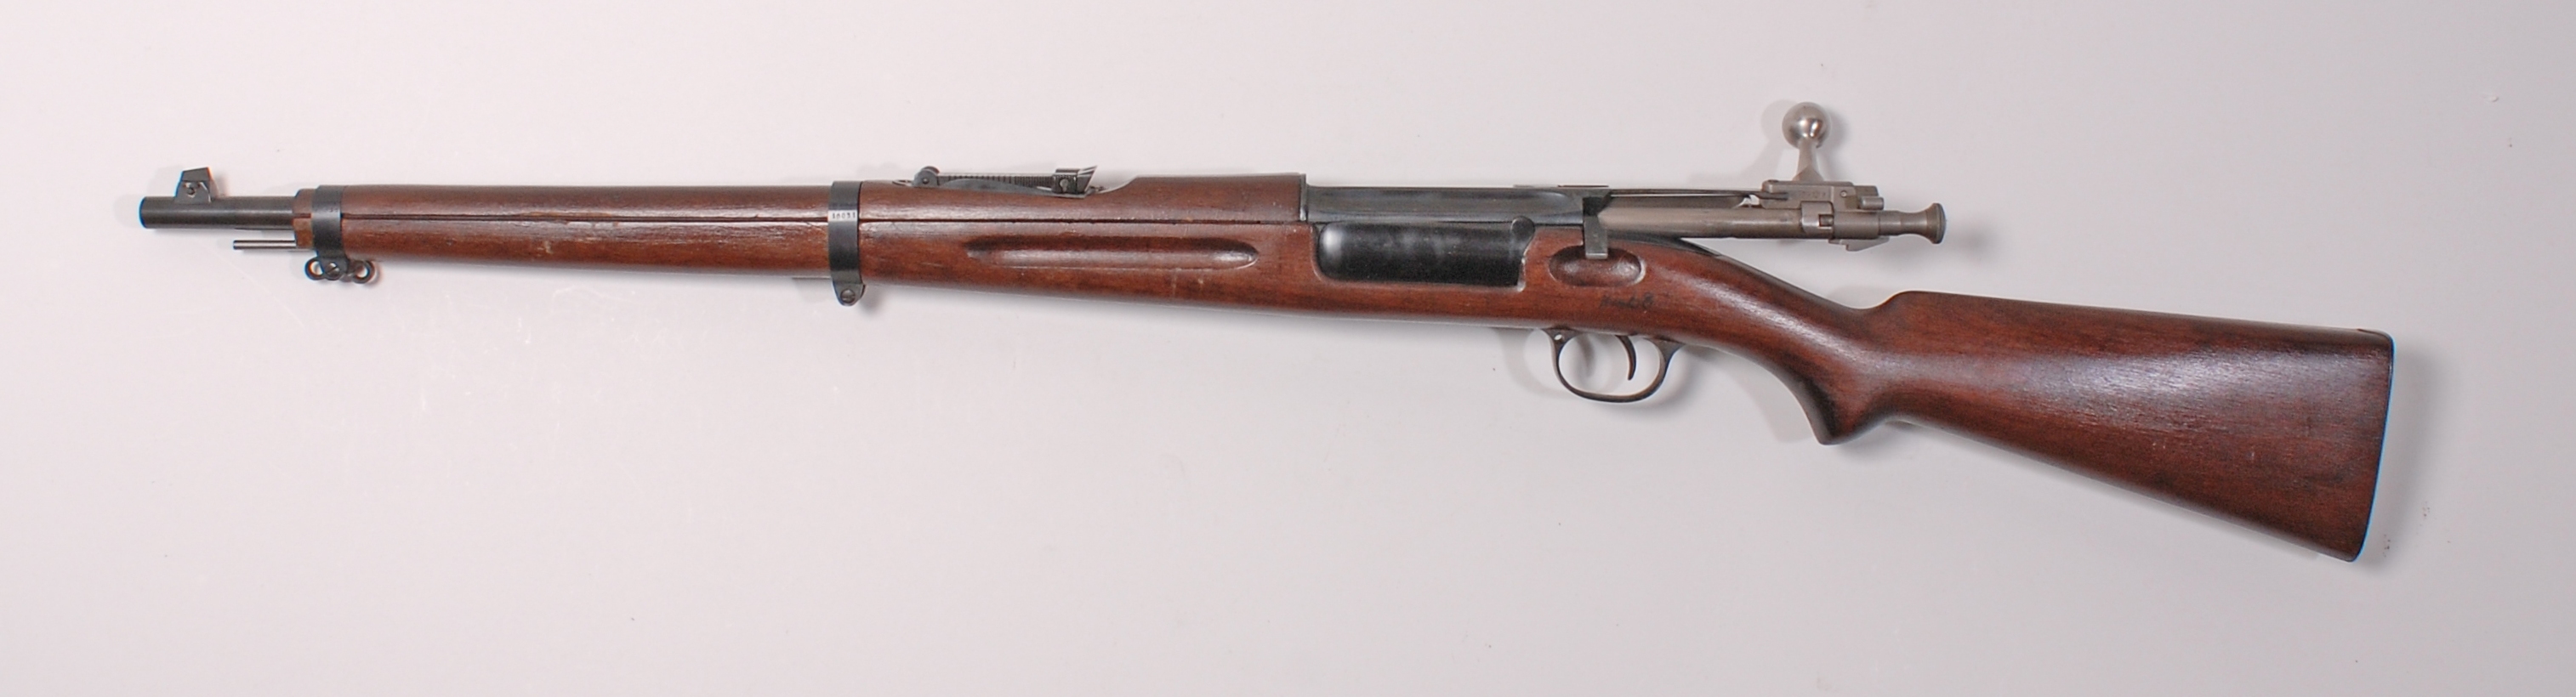 ./guns/rifle/bilder/Rifle-Kongsberg-Krag-M1904-10031-2.jpg